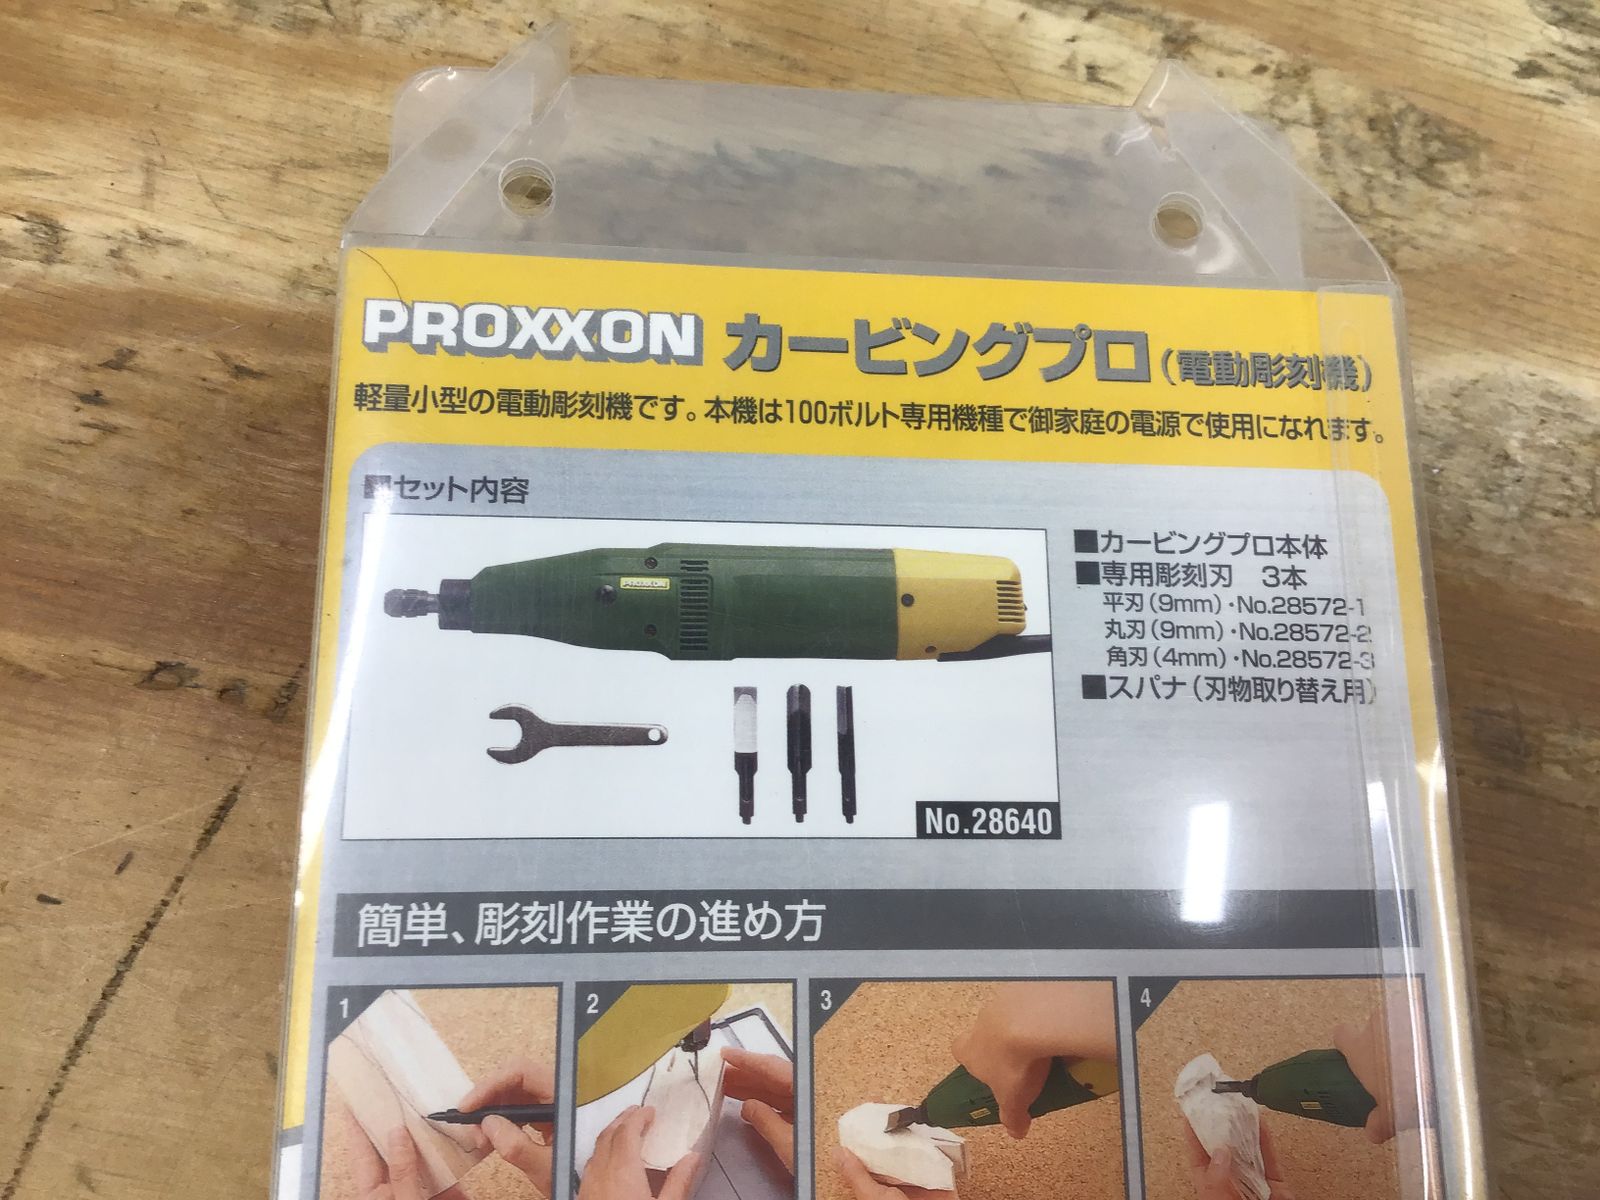 ▽プロクソン/PROXXON カービングプロ No.28640 電動彫刻機【柏店